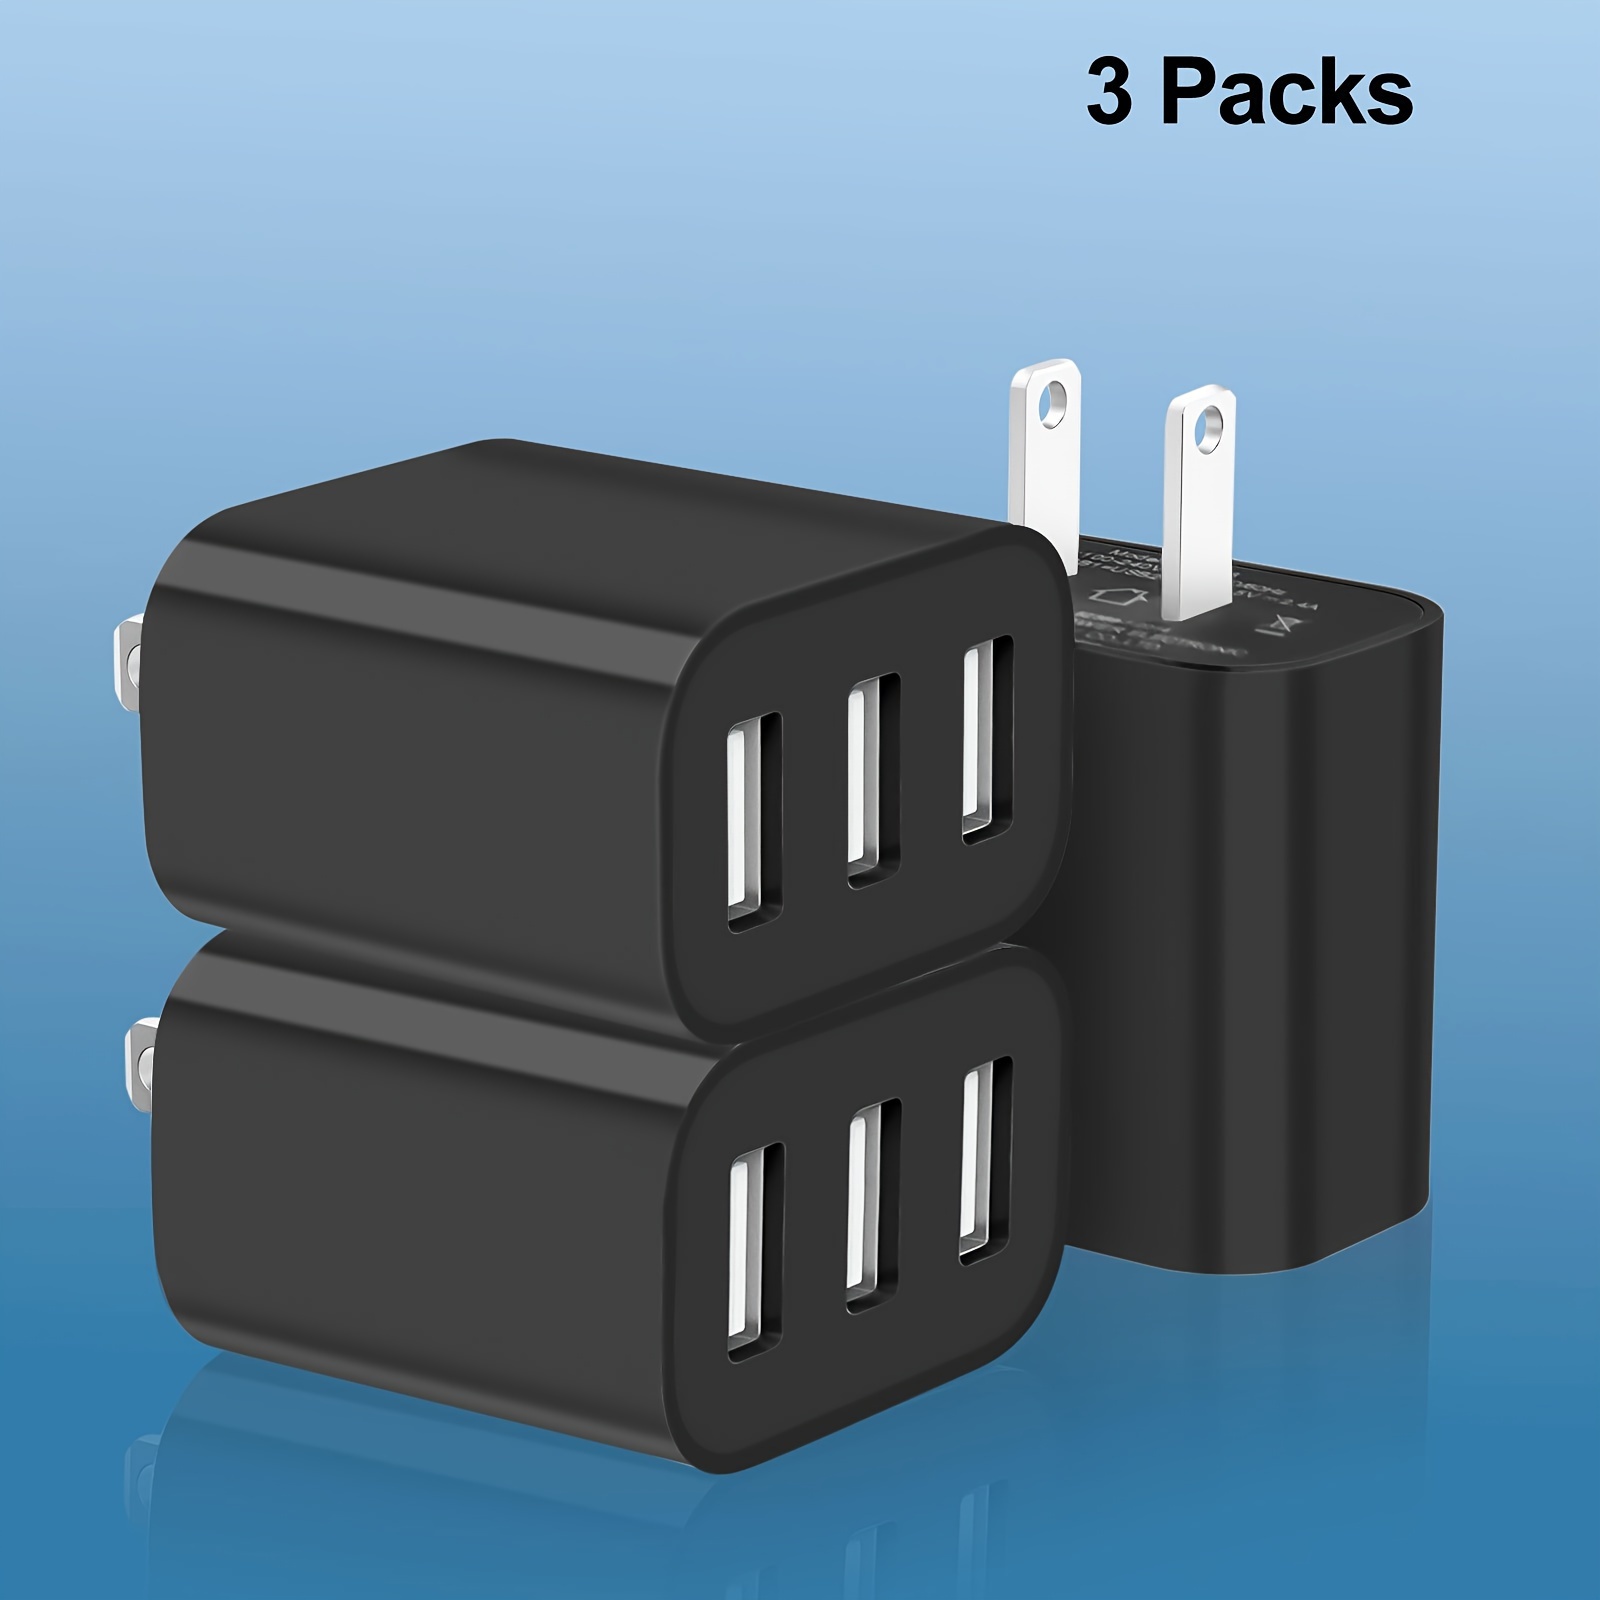 Regleta de alimentación USB C de 30 W, cargador rápido con 3 salidas y  puerto PD de 30 W, estación de carga SUPERDANNY Mini Cube con enchufe  plano